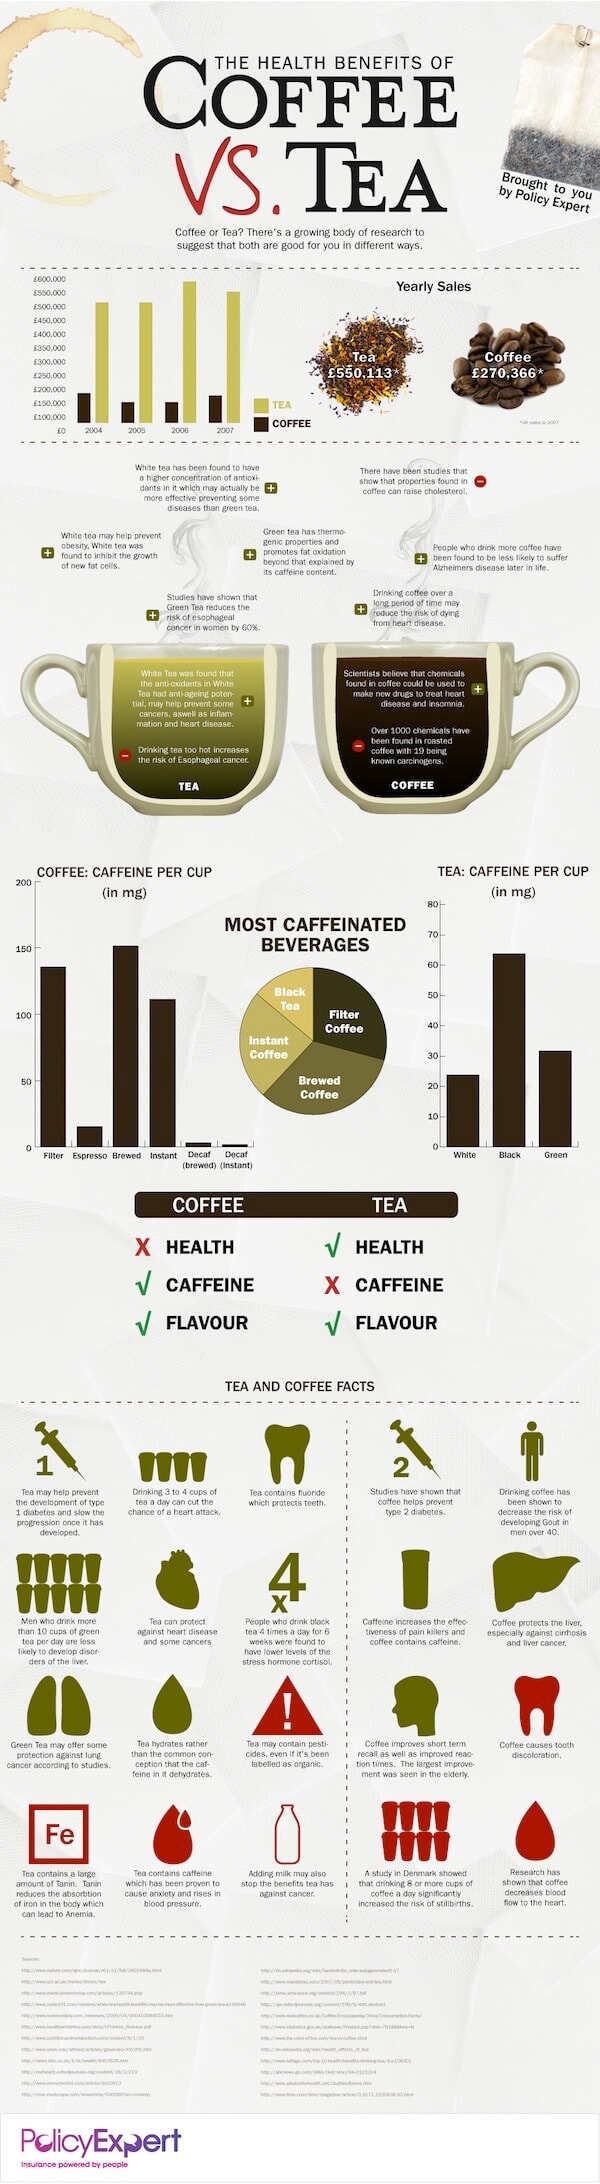 咖啡和茶对健康的好处